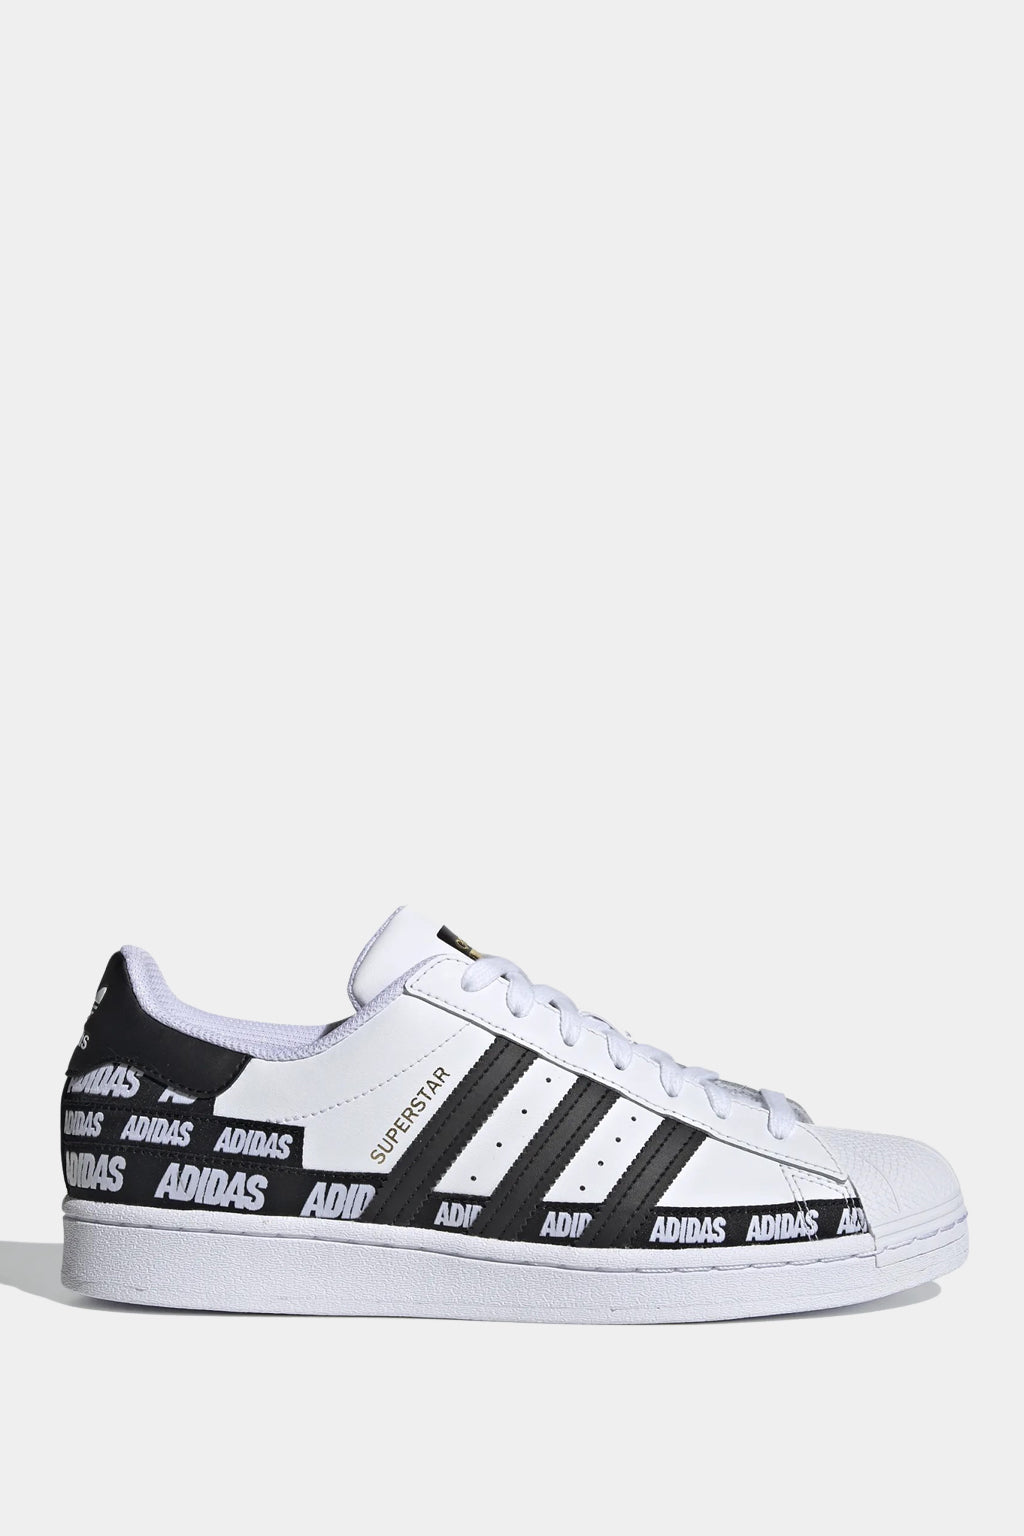 Adidas Originals - Superstar Shoes